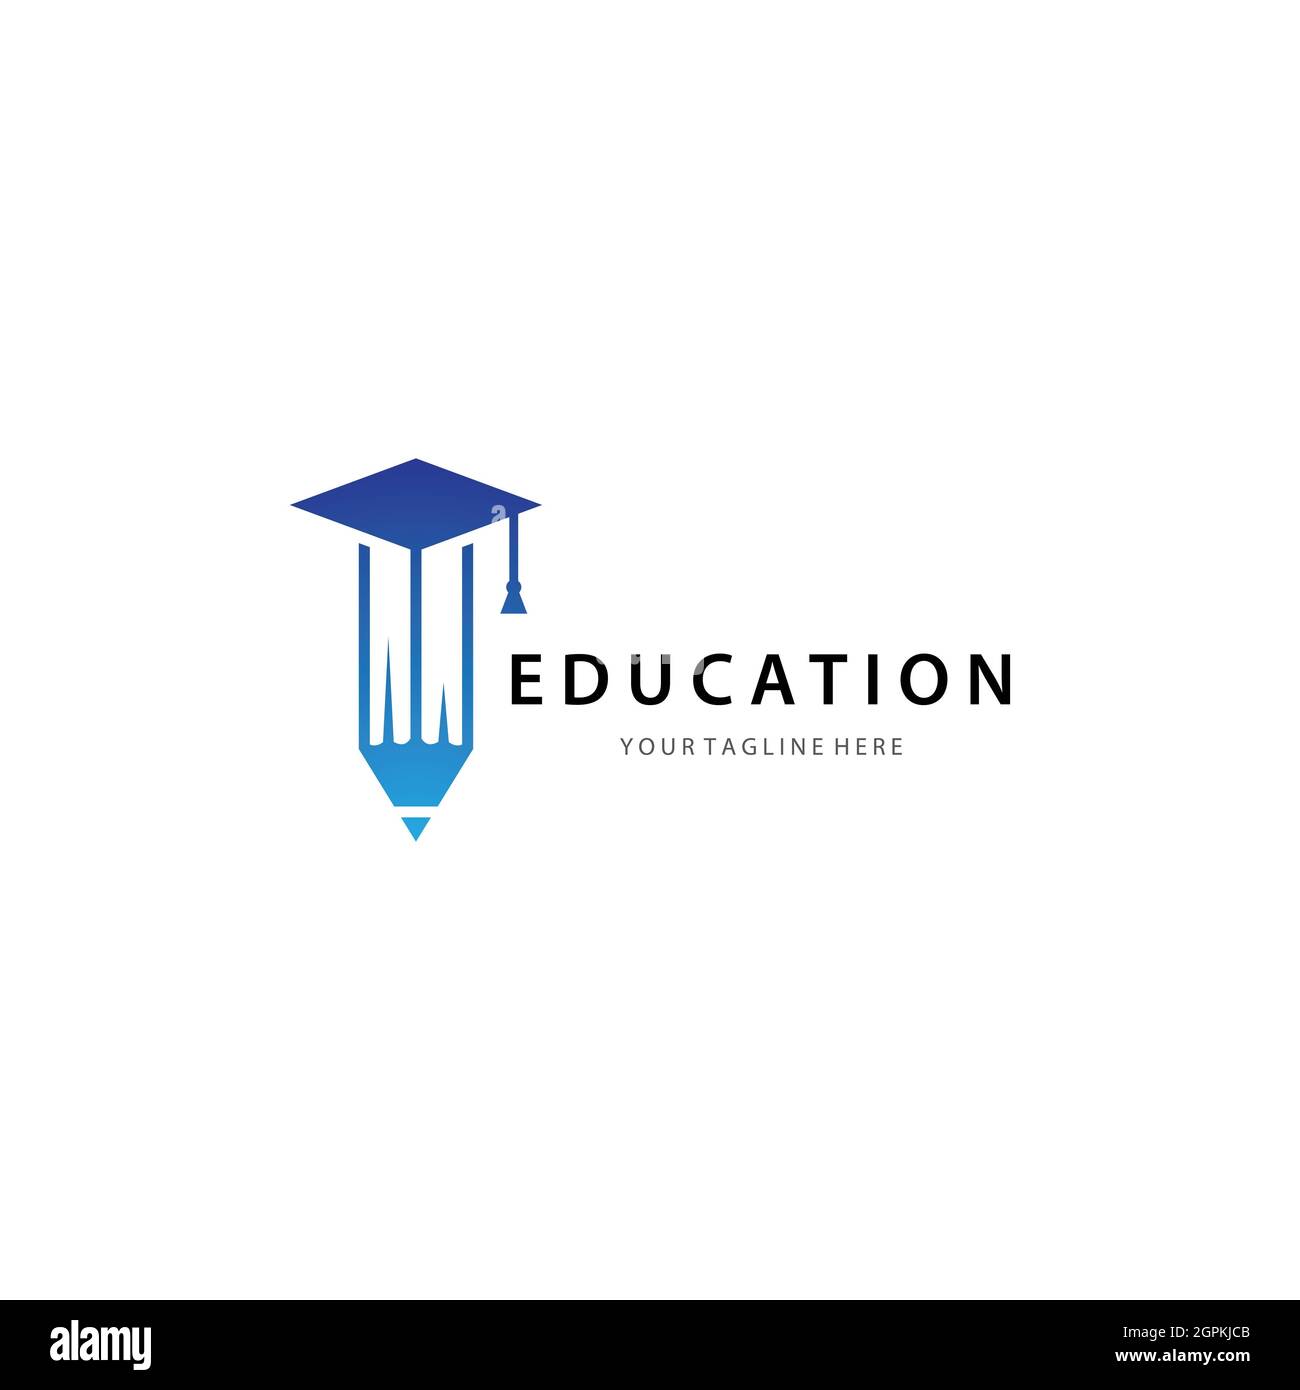 Education logo template vector icon design Stock Photo